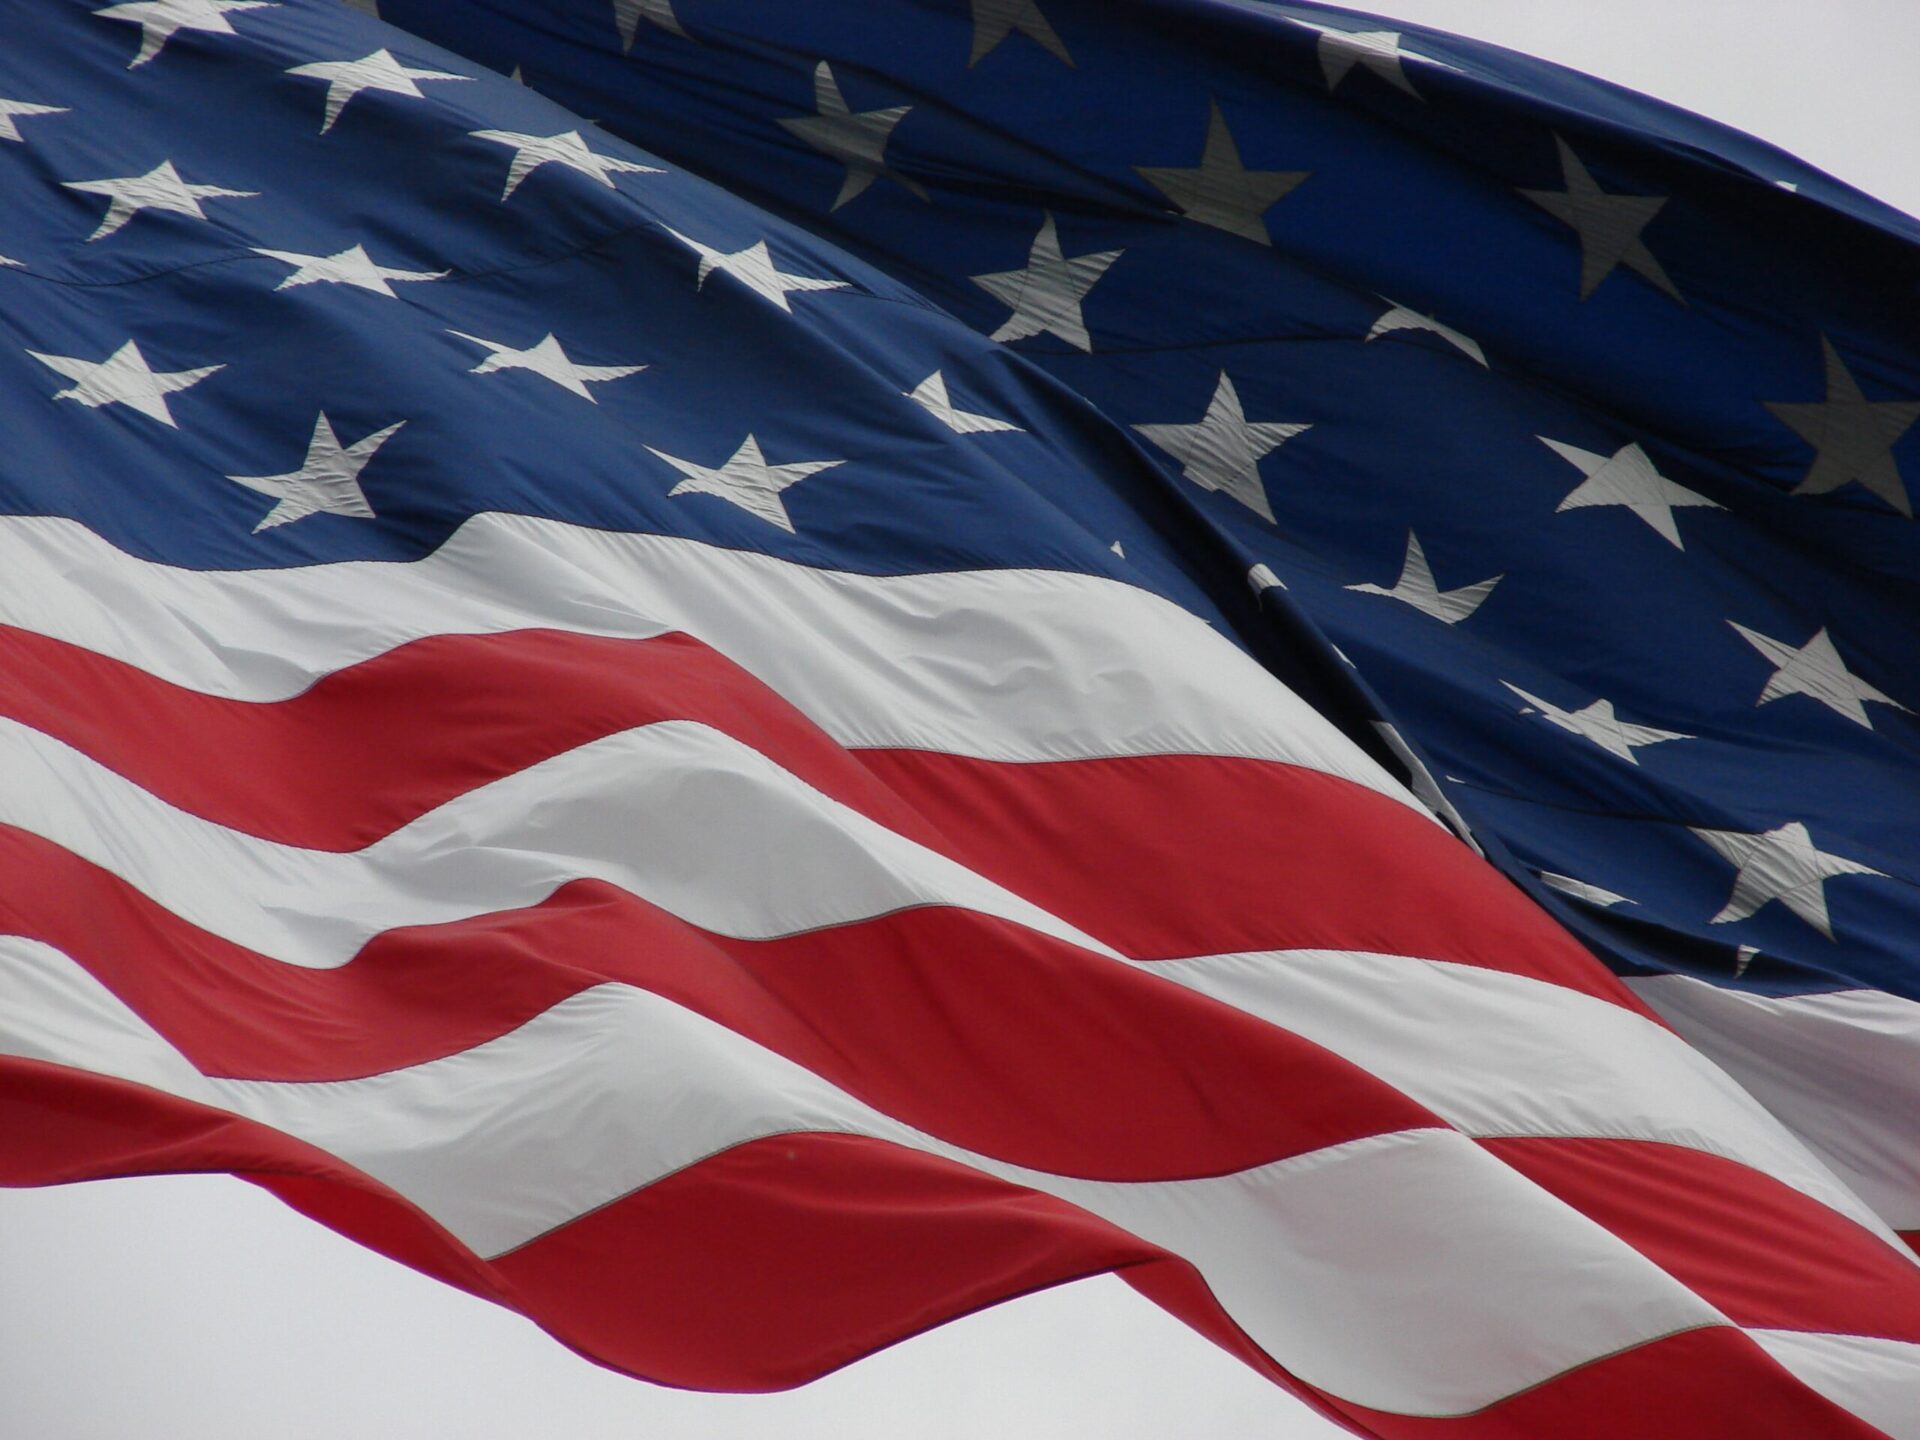 PMI composto dos EUA em outubro: imagem mostra bandeira dos EUA